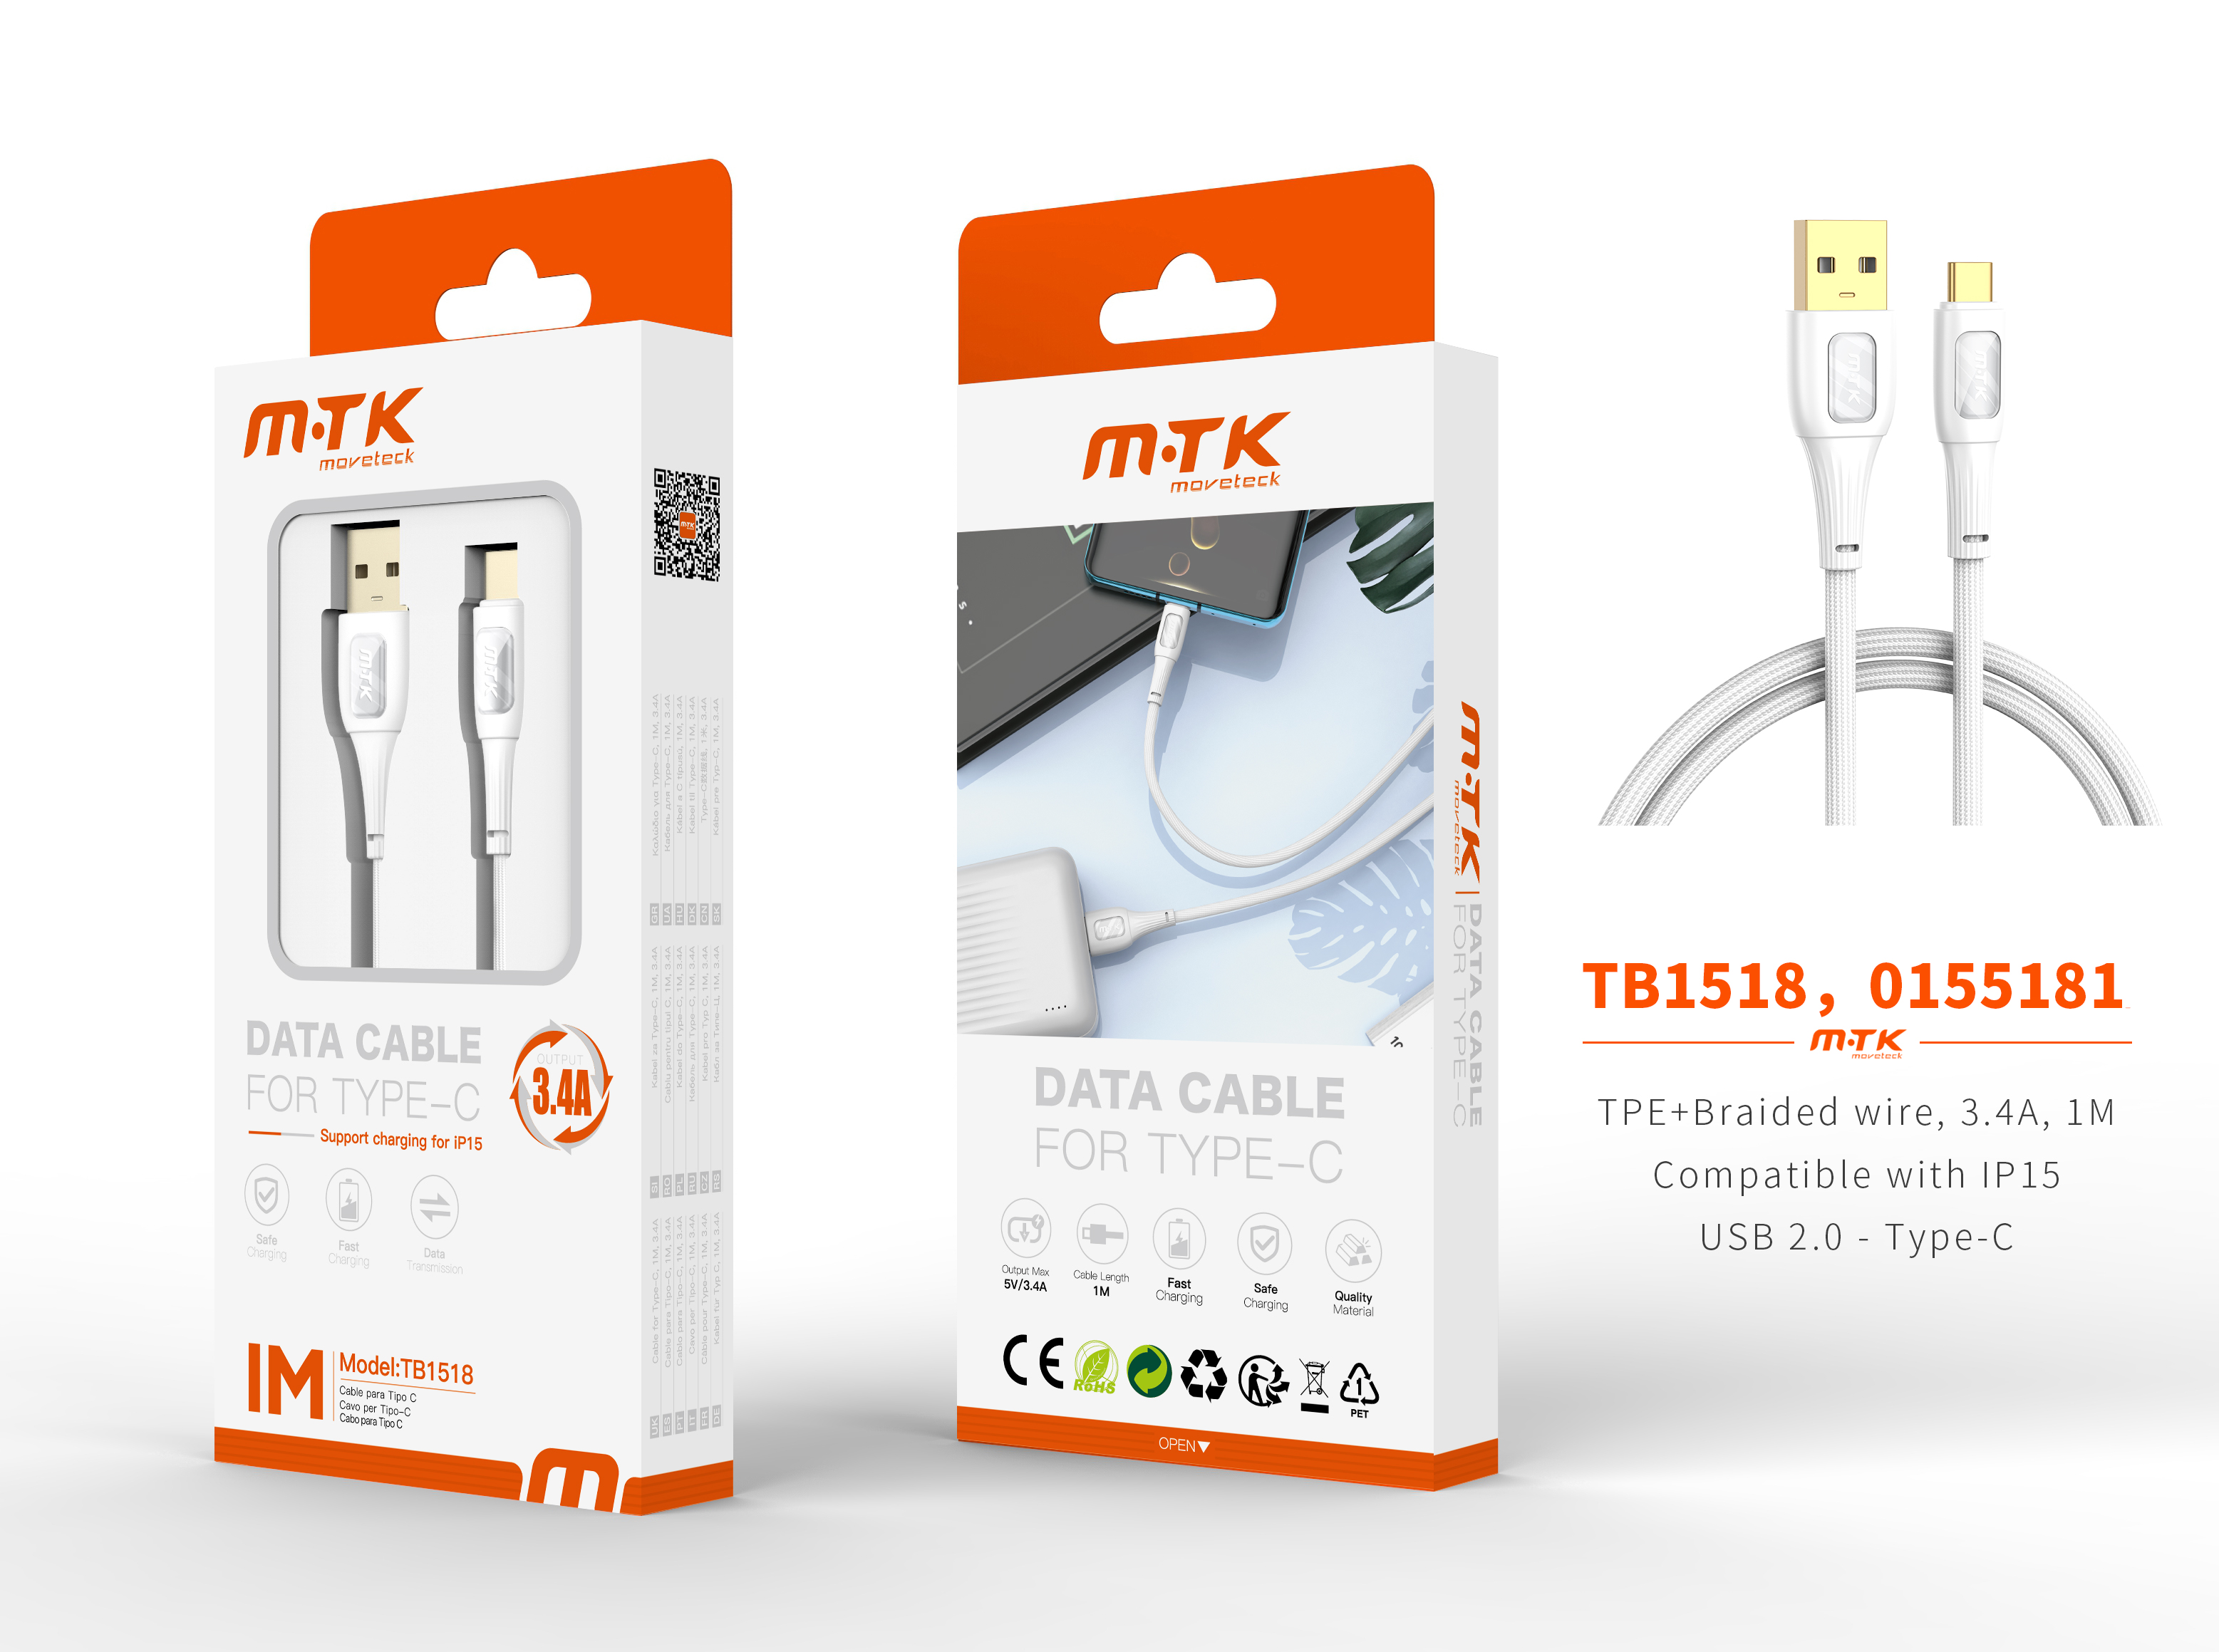 TB1518 BL Luxury Cable de datos Yuri nylon trenzado para Type-C, Compatible con IPhone Type-C, 5V/3.4A, 1M, Blanco